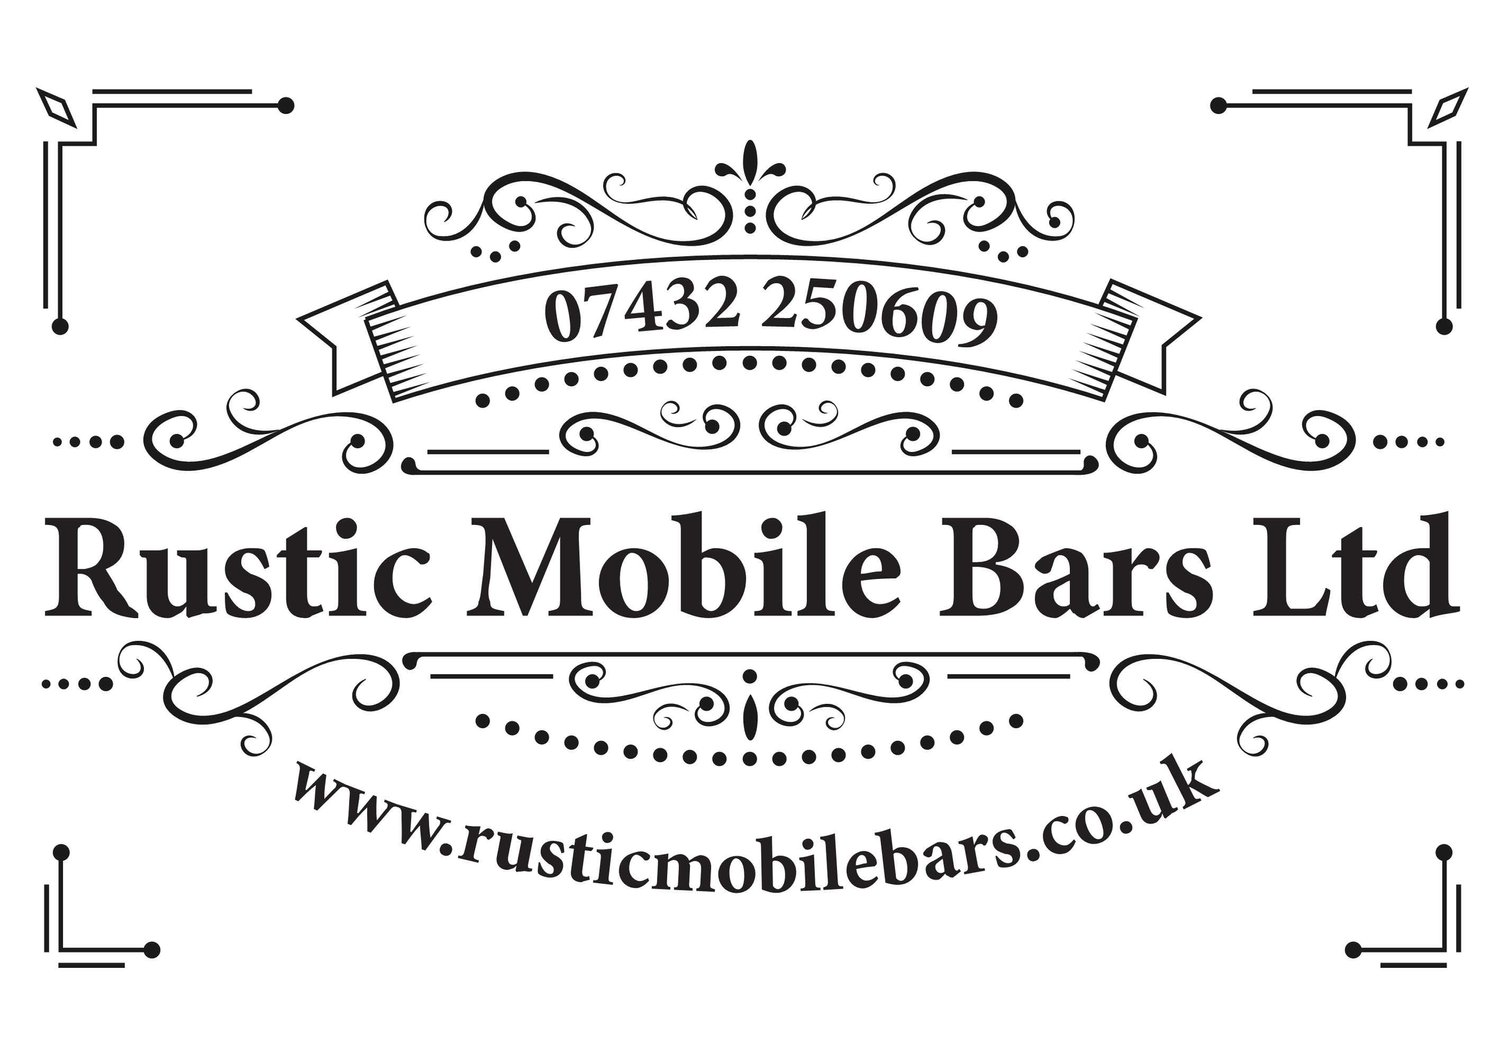 Rustic Mobile Bars Ltd